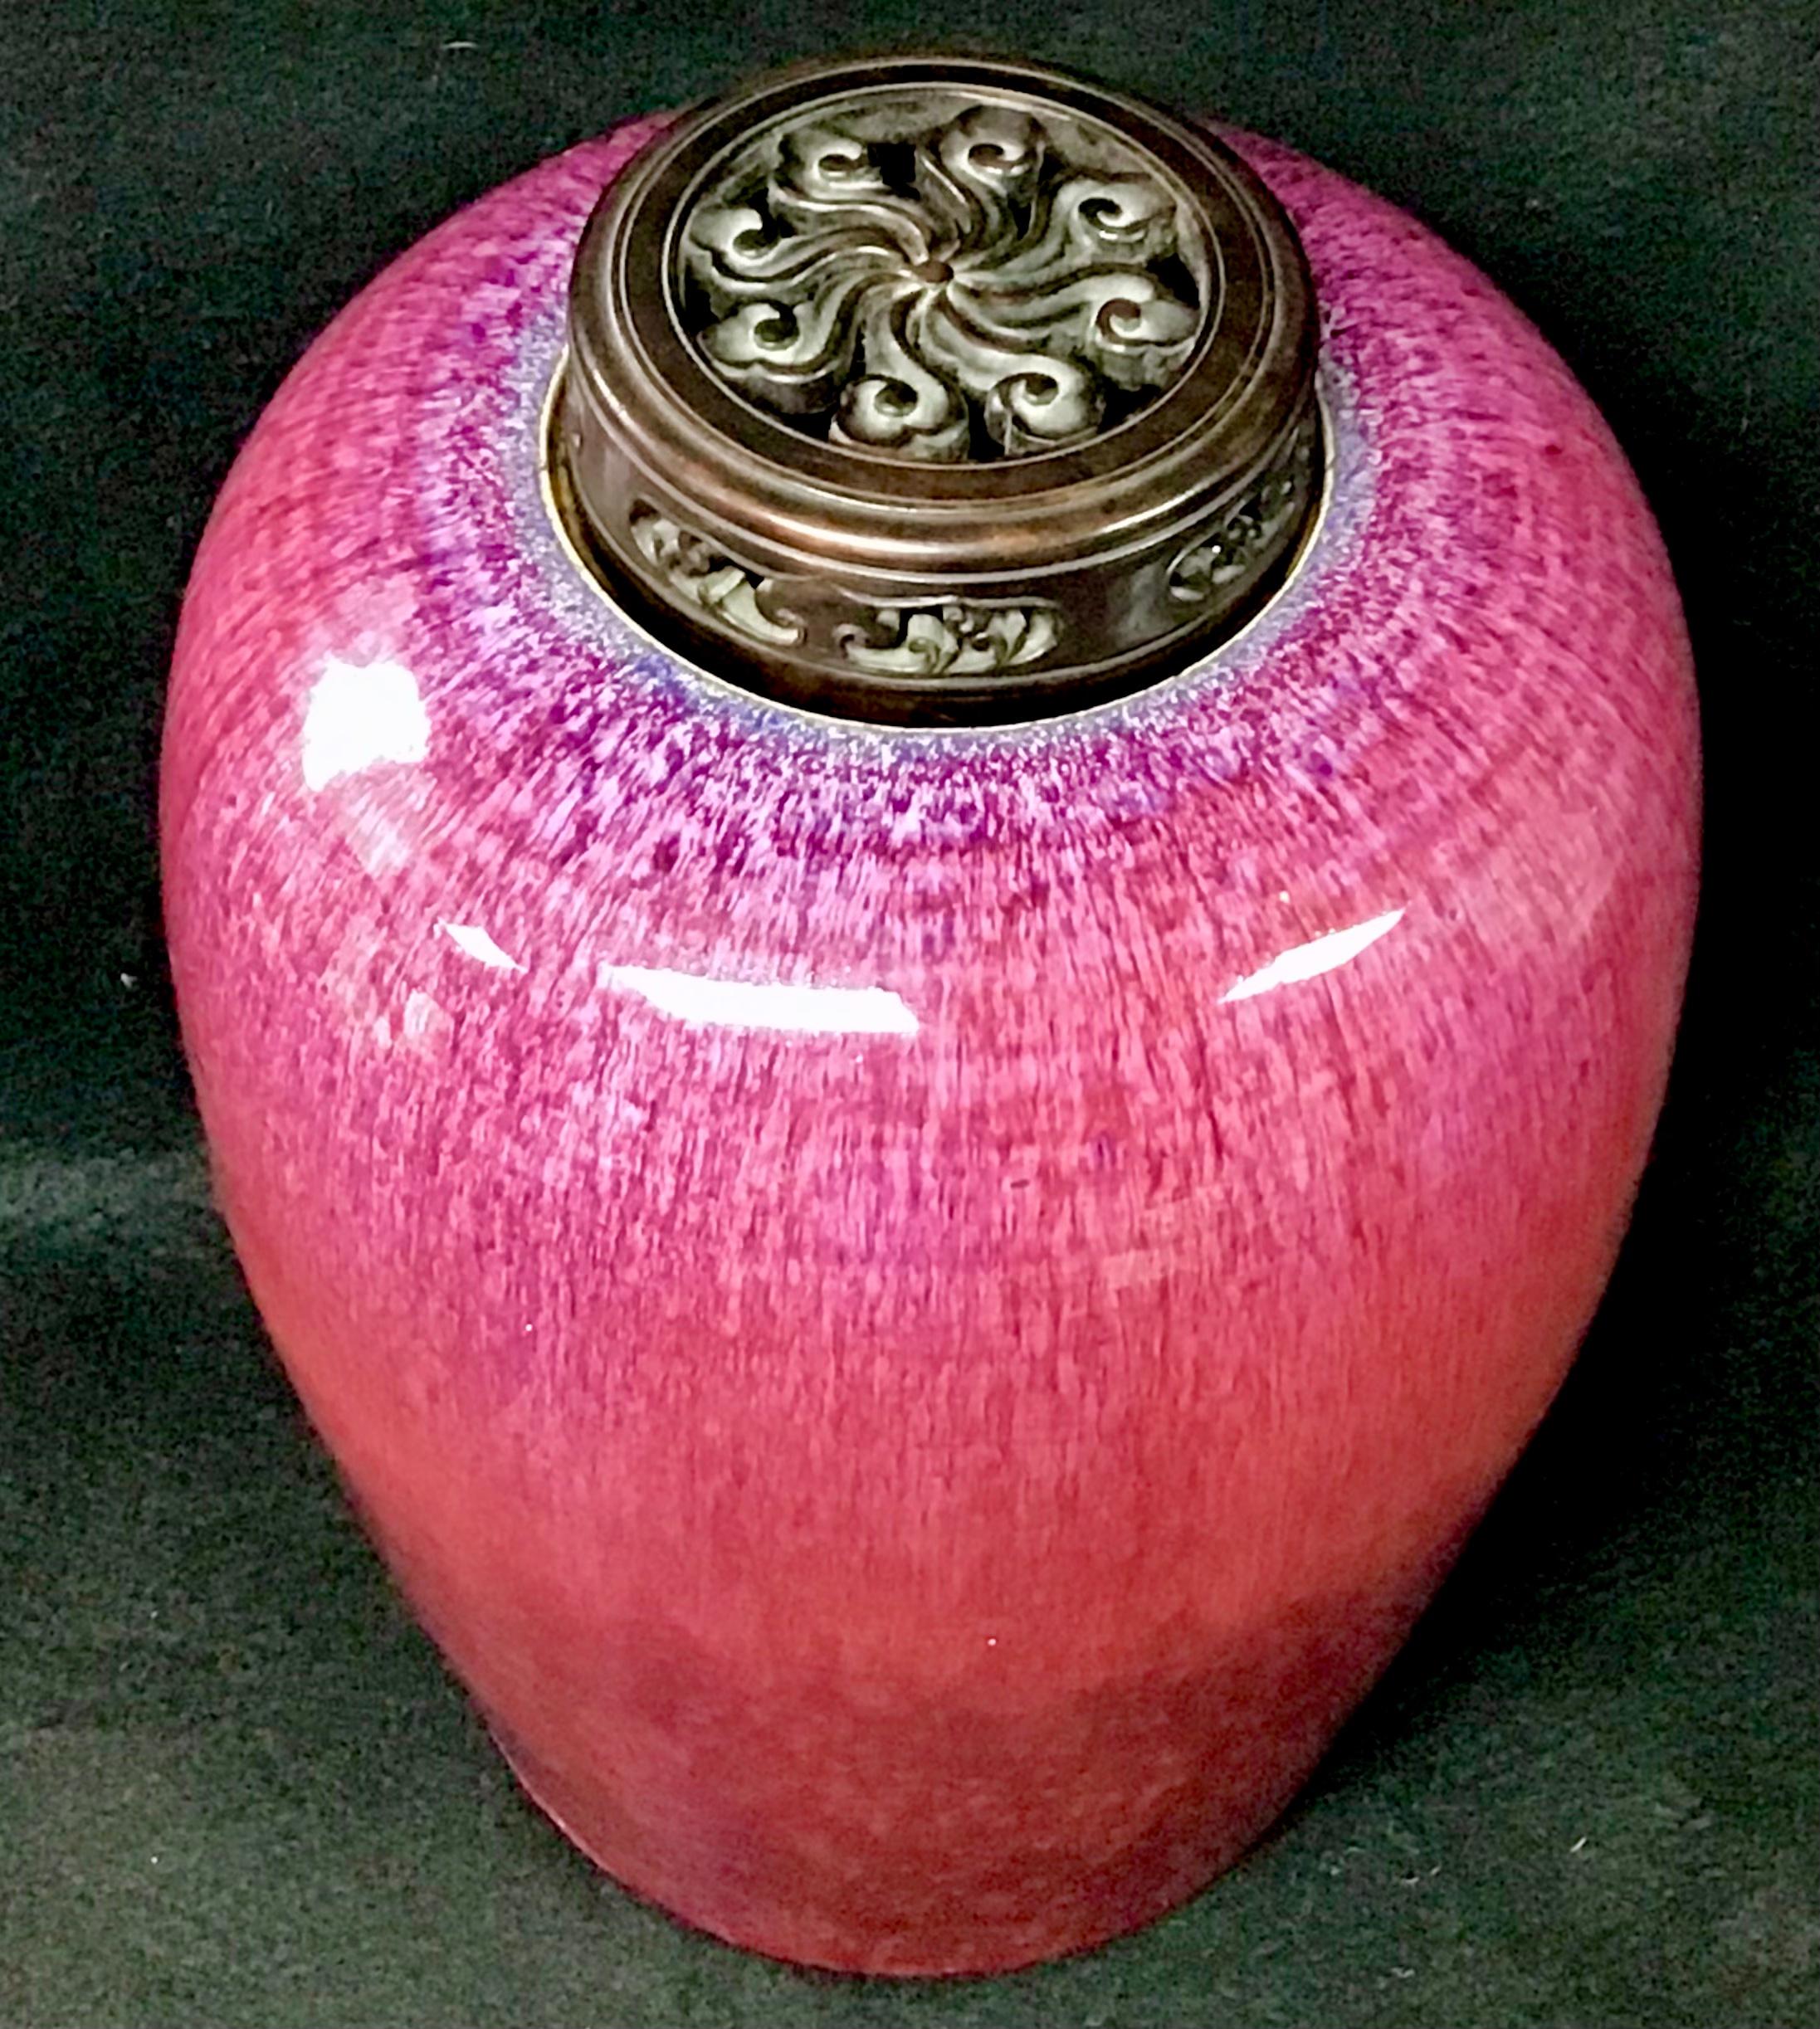 Chinesischer ovaler Flammen-Ingwer-Krug mit geschnitztem Holzdeckel. Flambiertes Geschirr besticht durch schöne Unregelmäßigkeiten und leuchtende Blau- und Violetttöne. Diese streifigen, schillernden Farben sind das Ergebnis von metallischen